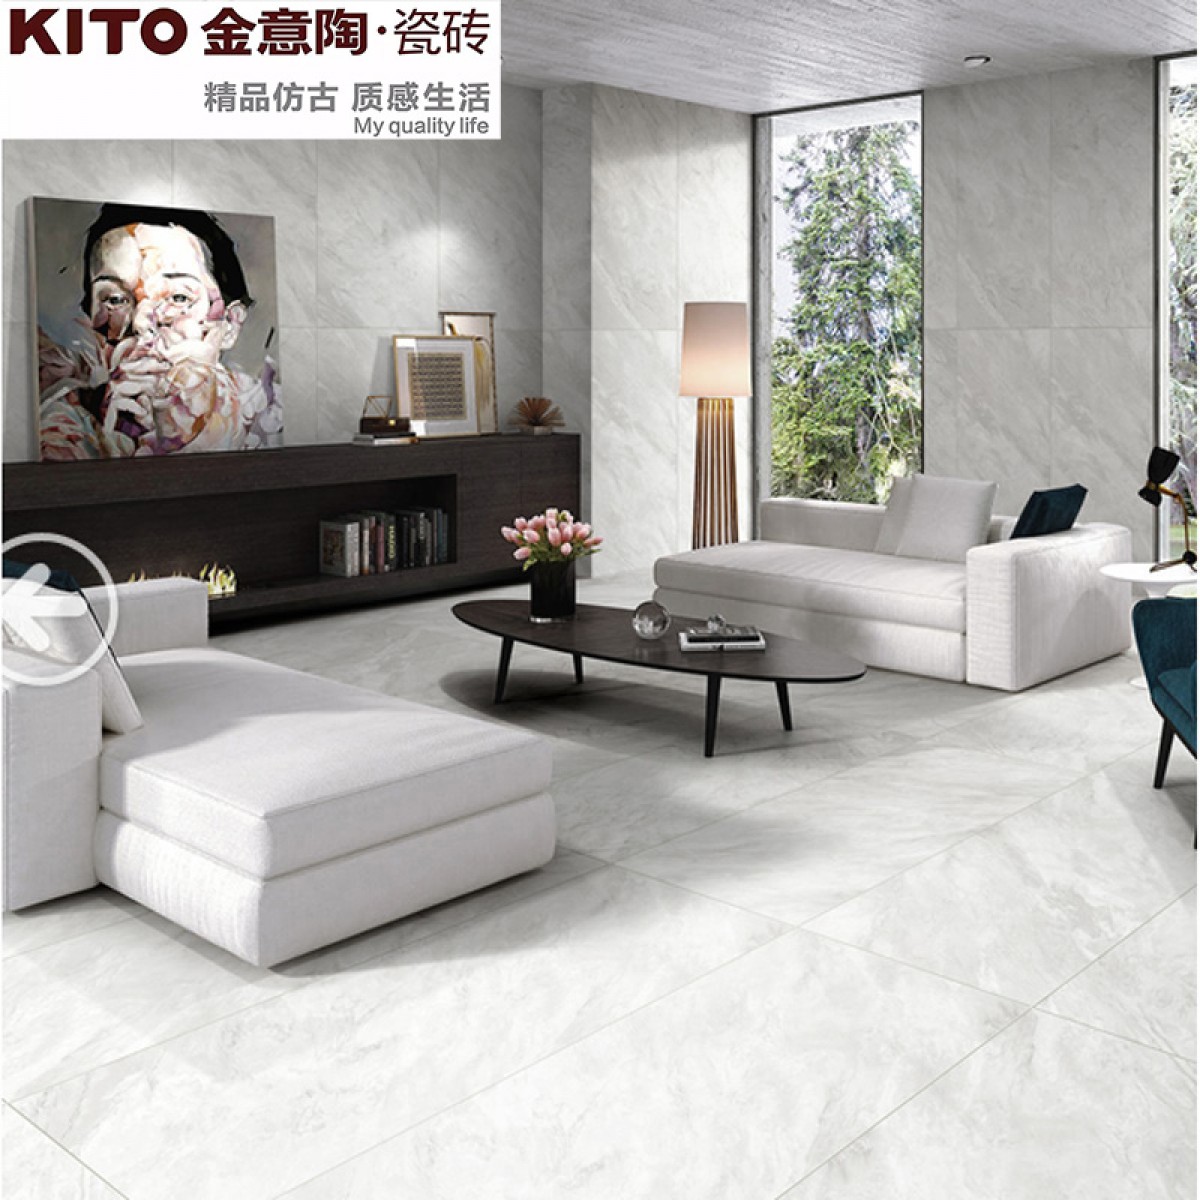 惠州KITO金意陶瓷砖糖果釉系列因特拉肯 900*900MM 客厅餐厅墙砖地砖